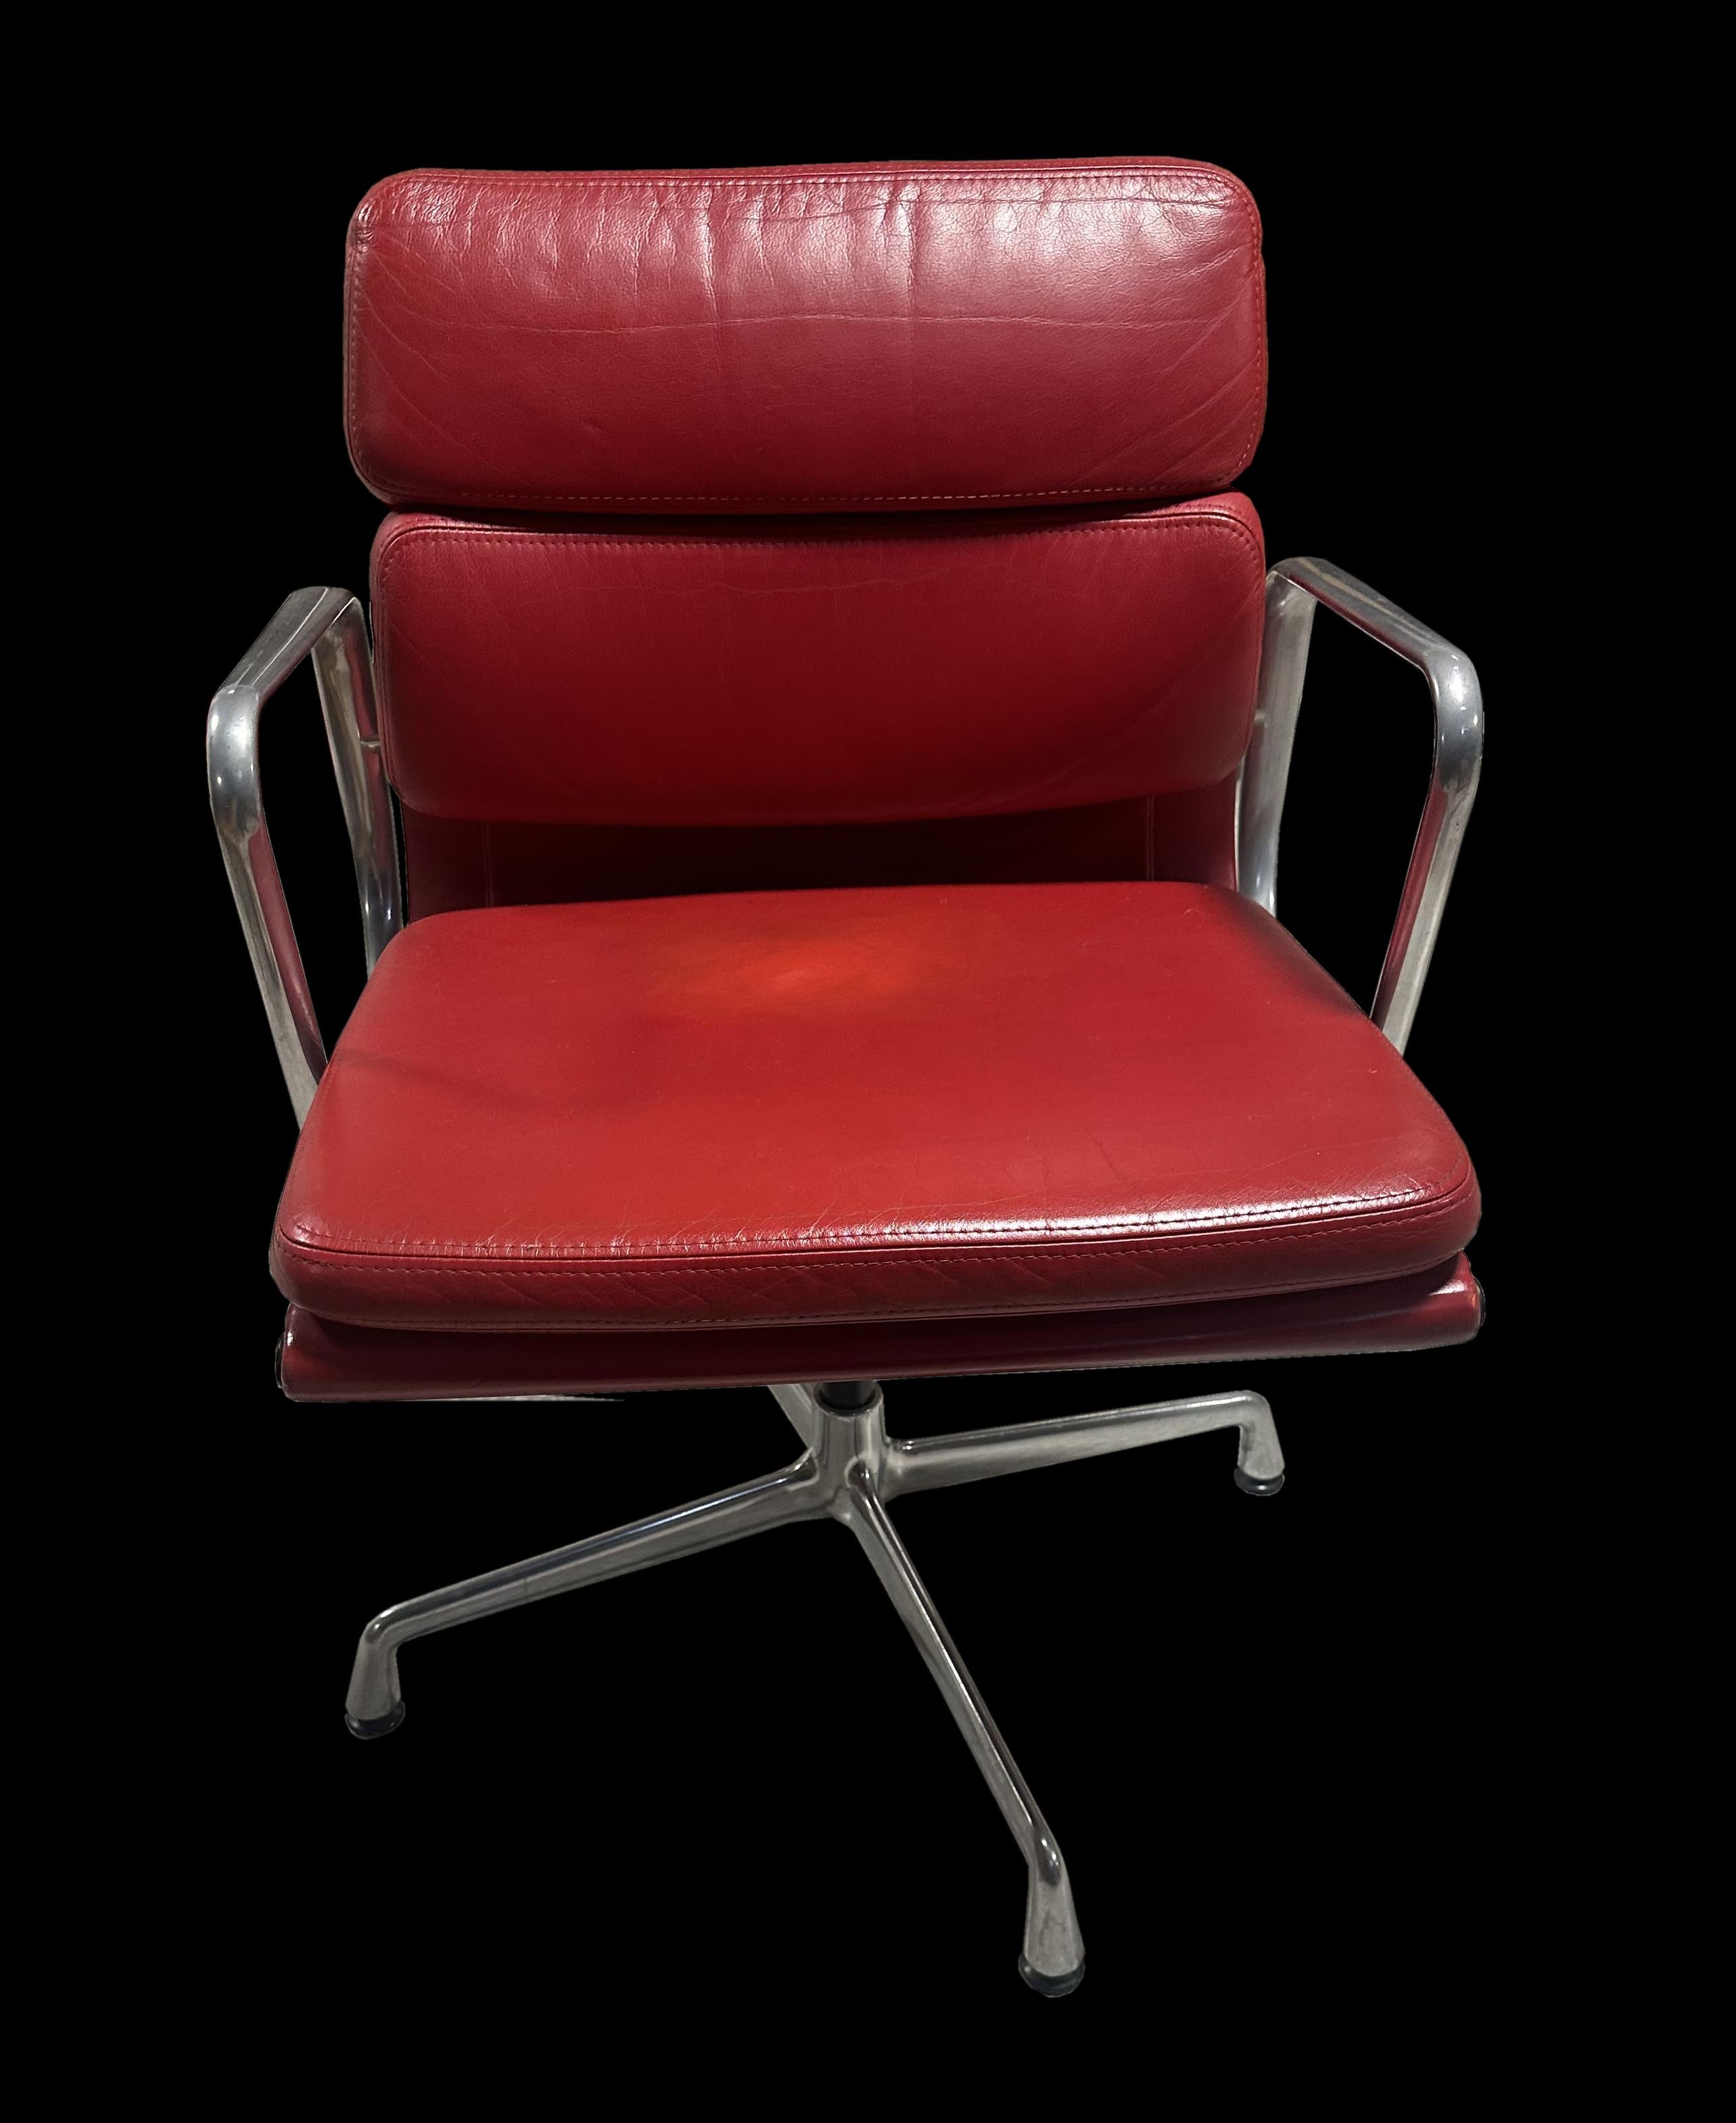 Il s'agit de très beaux exemplaires en cuir de ce modèle de chaises de bureau Eames à rembourrage souple, qui coûtaient une petite fortune à l'état neuf. Ces chaises ont un aspect et un toucher plus agréables, avec un peu de patine sur l'aluminium